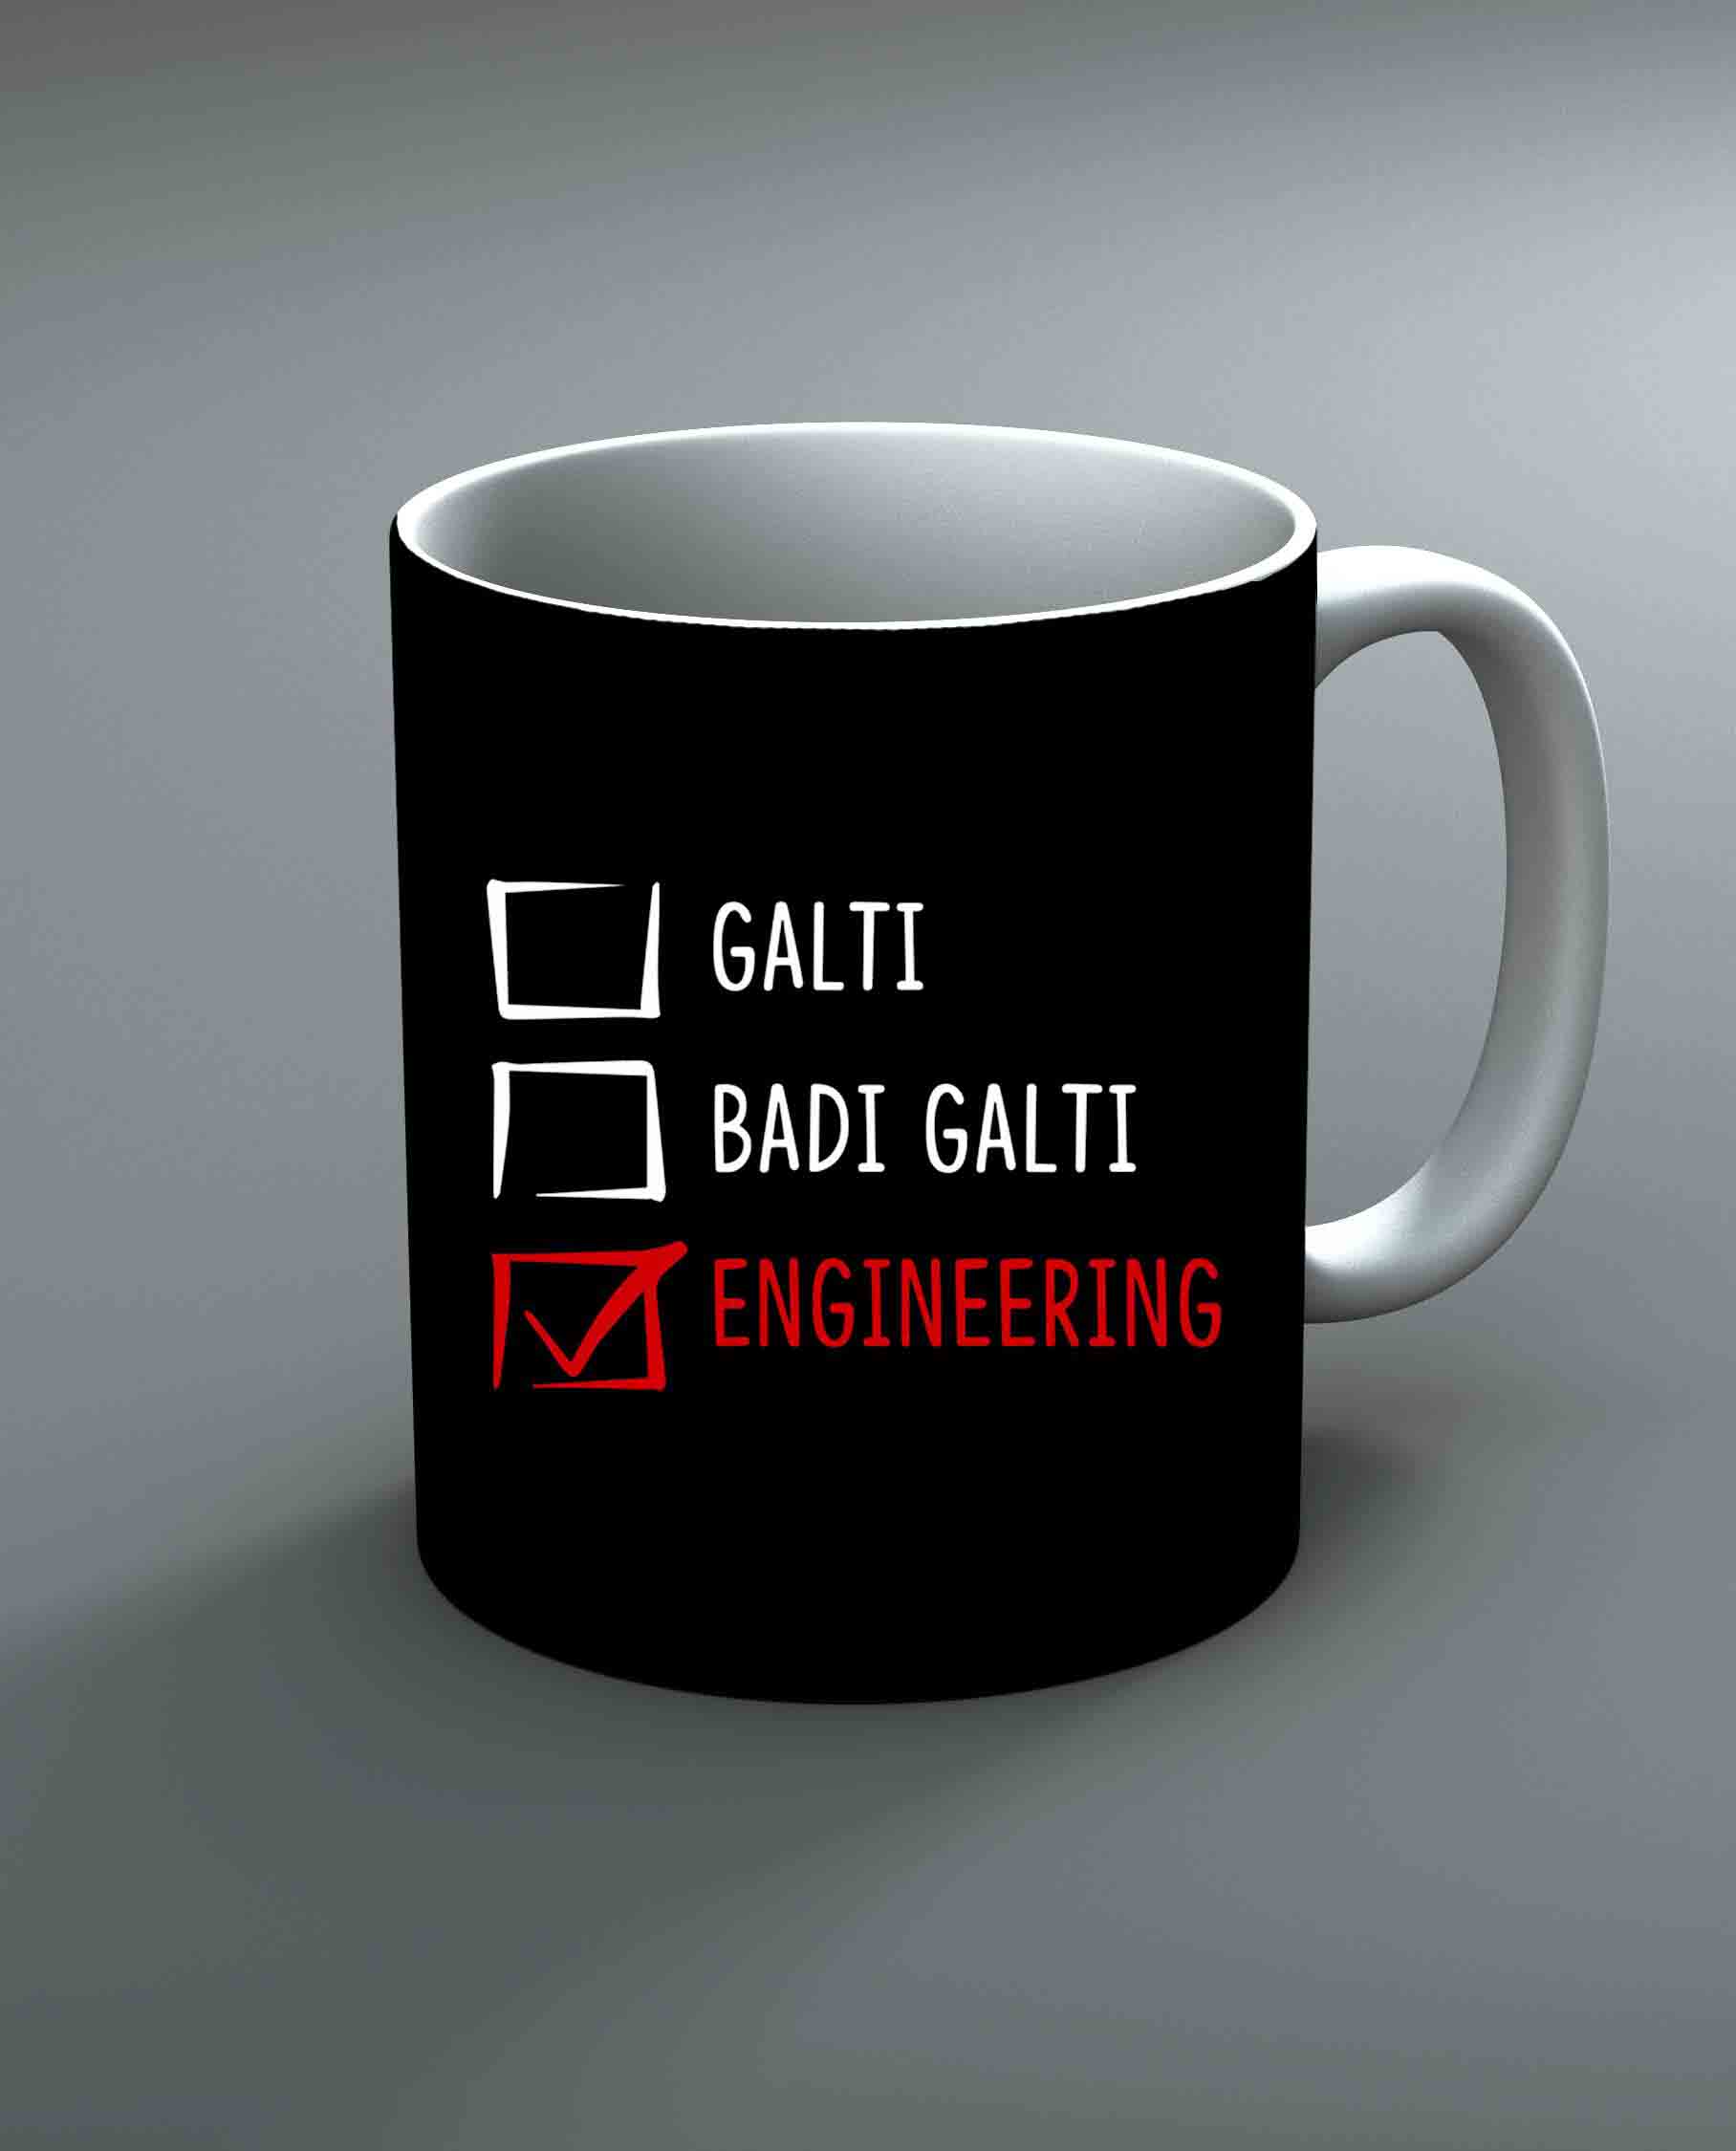 Galti Badi Galti Engineering Mug By Roshnai - Pickshop.Pk